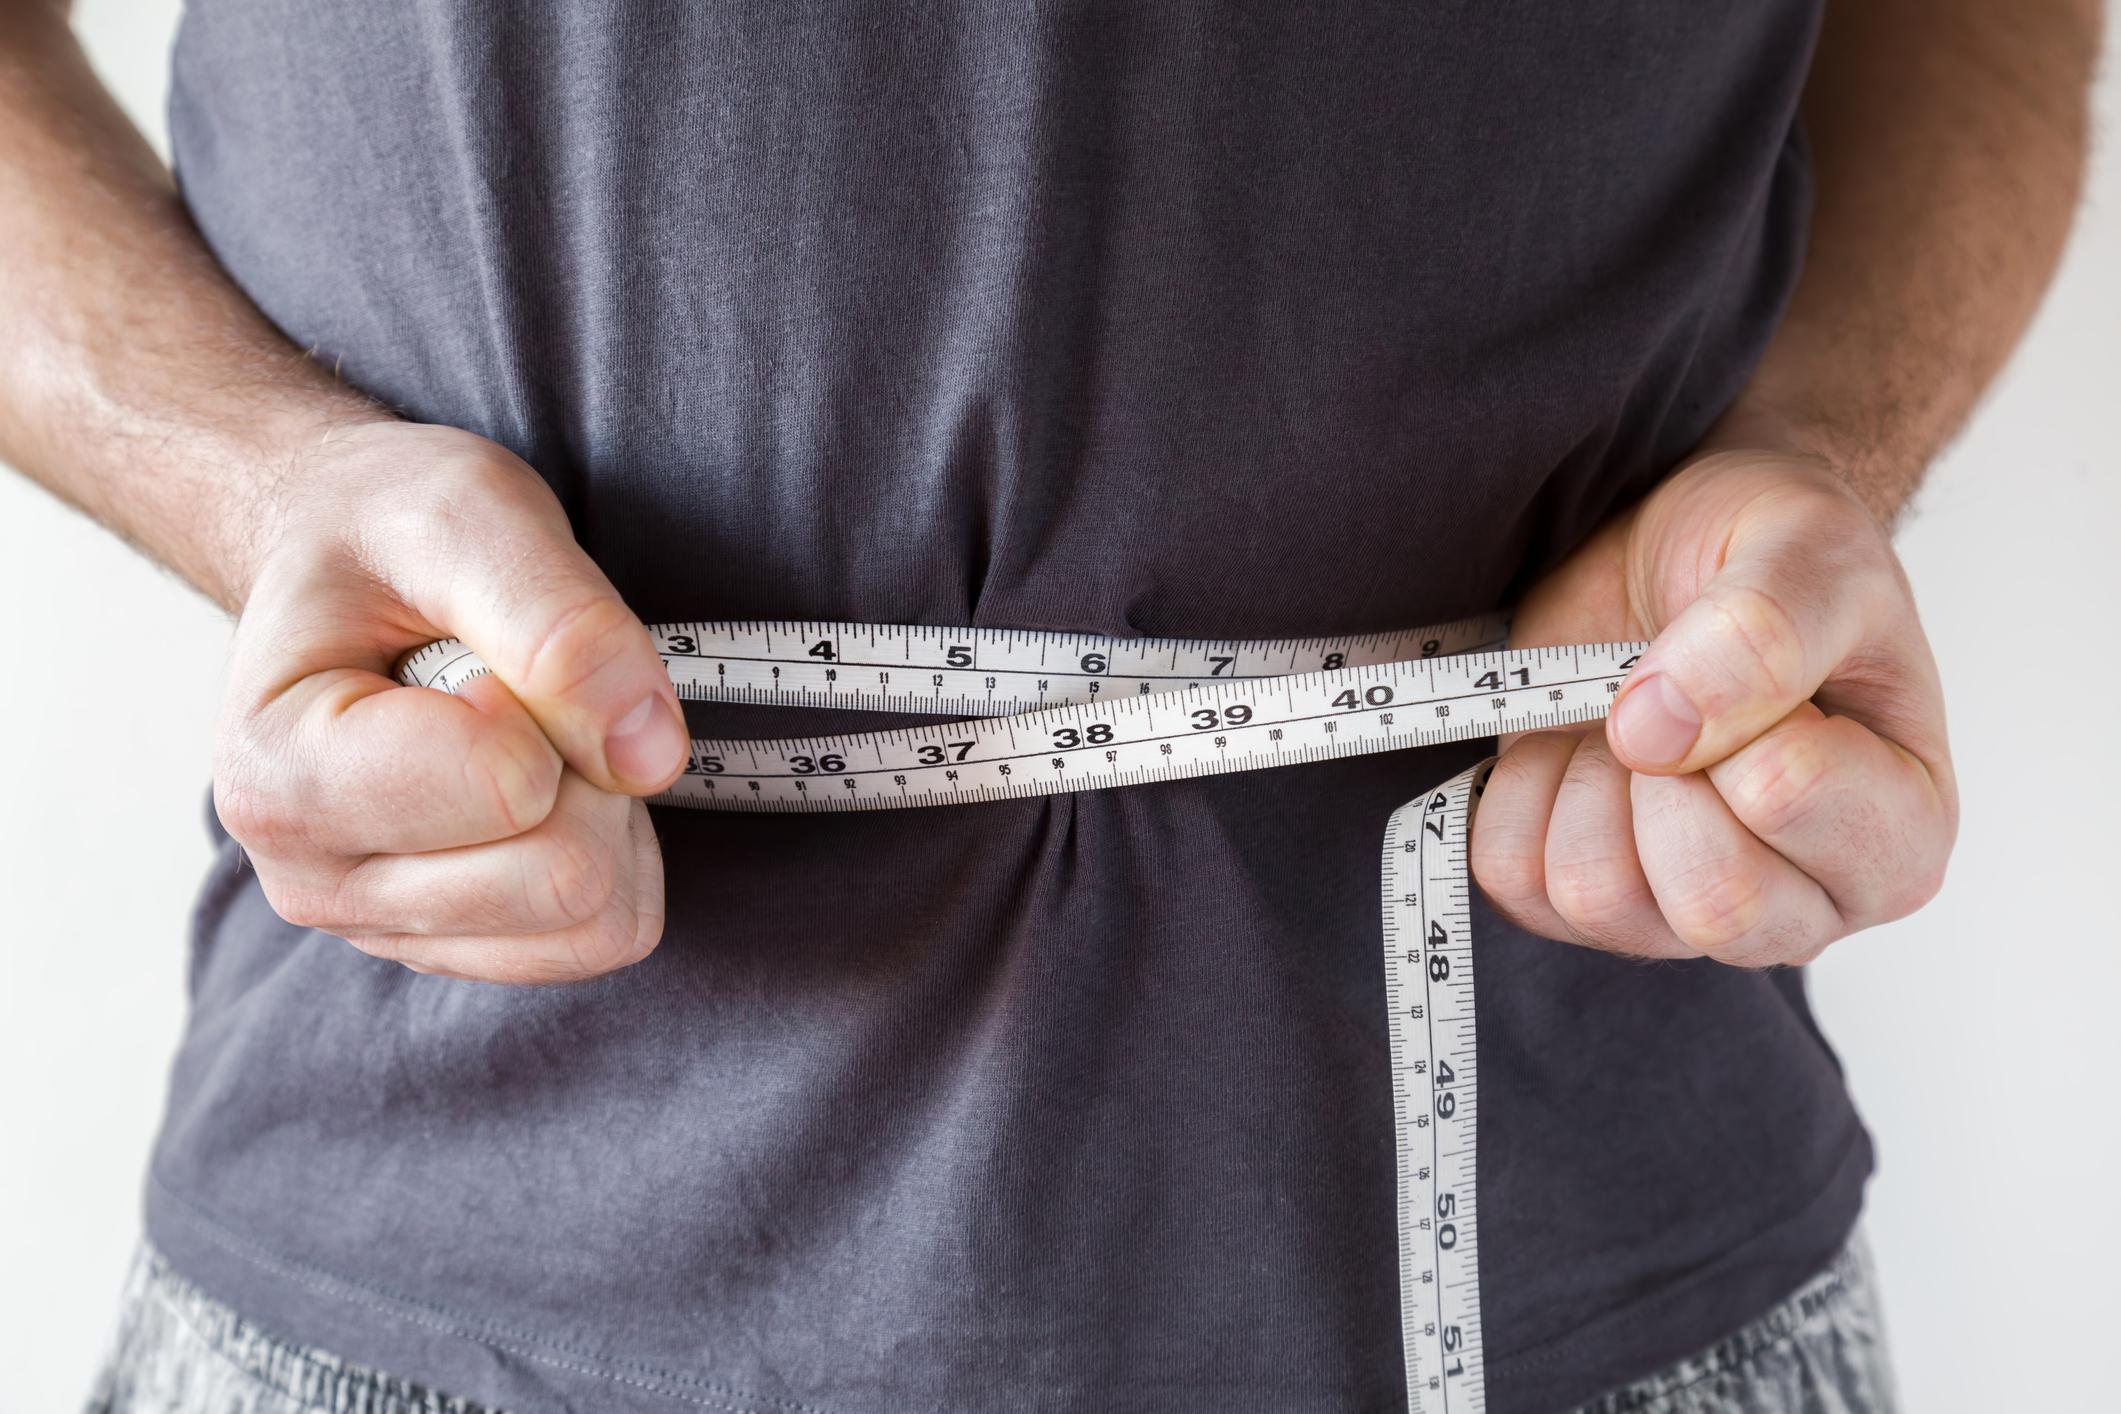 Obésité : le seul surpoids n’a pas d’influence sur la mortalité  